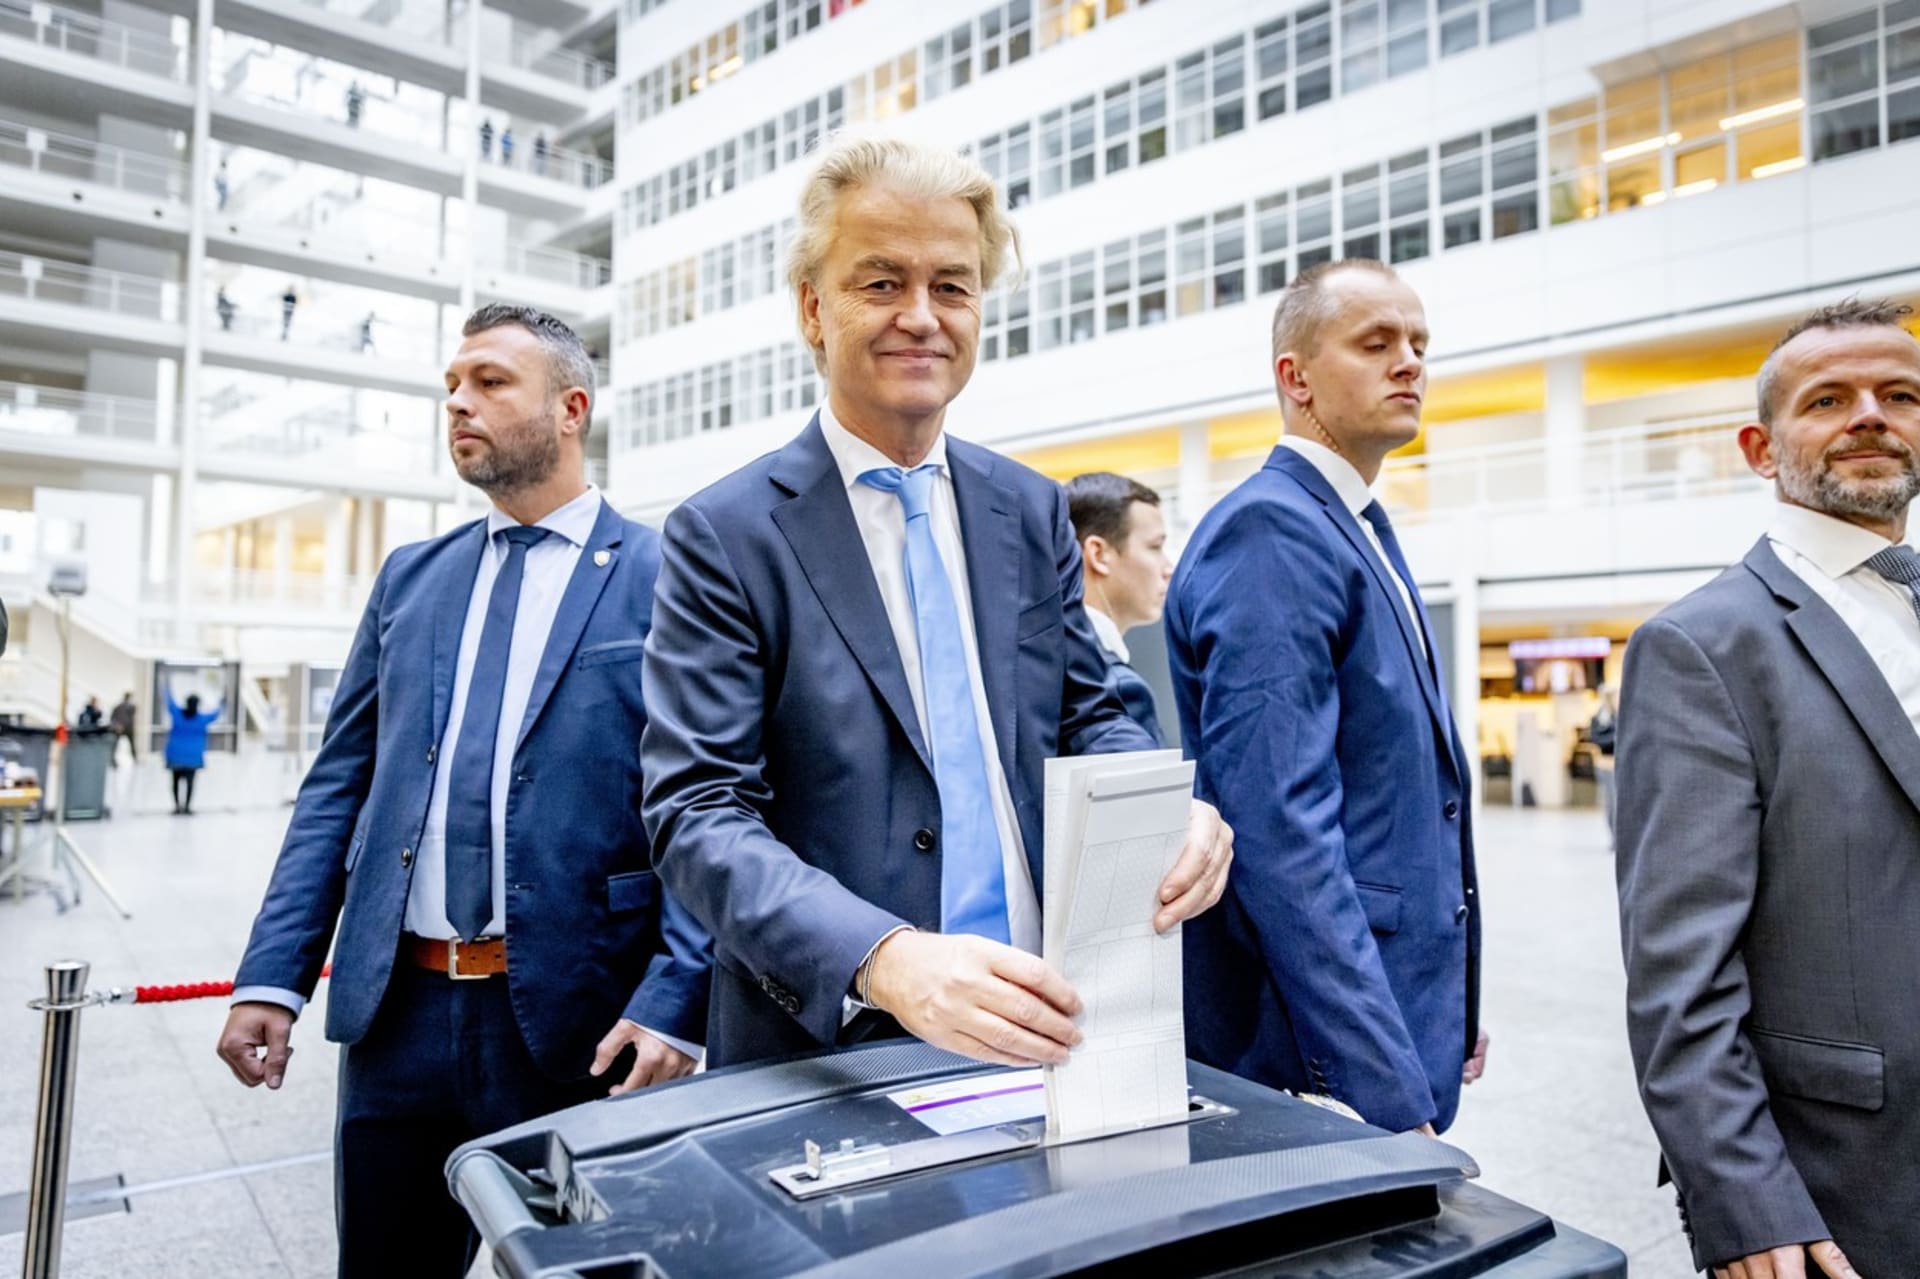 Geert Wilders v doprovodu dvou bodyguardů vhazuje volební lístek.